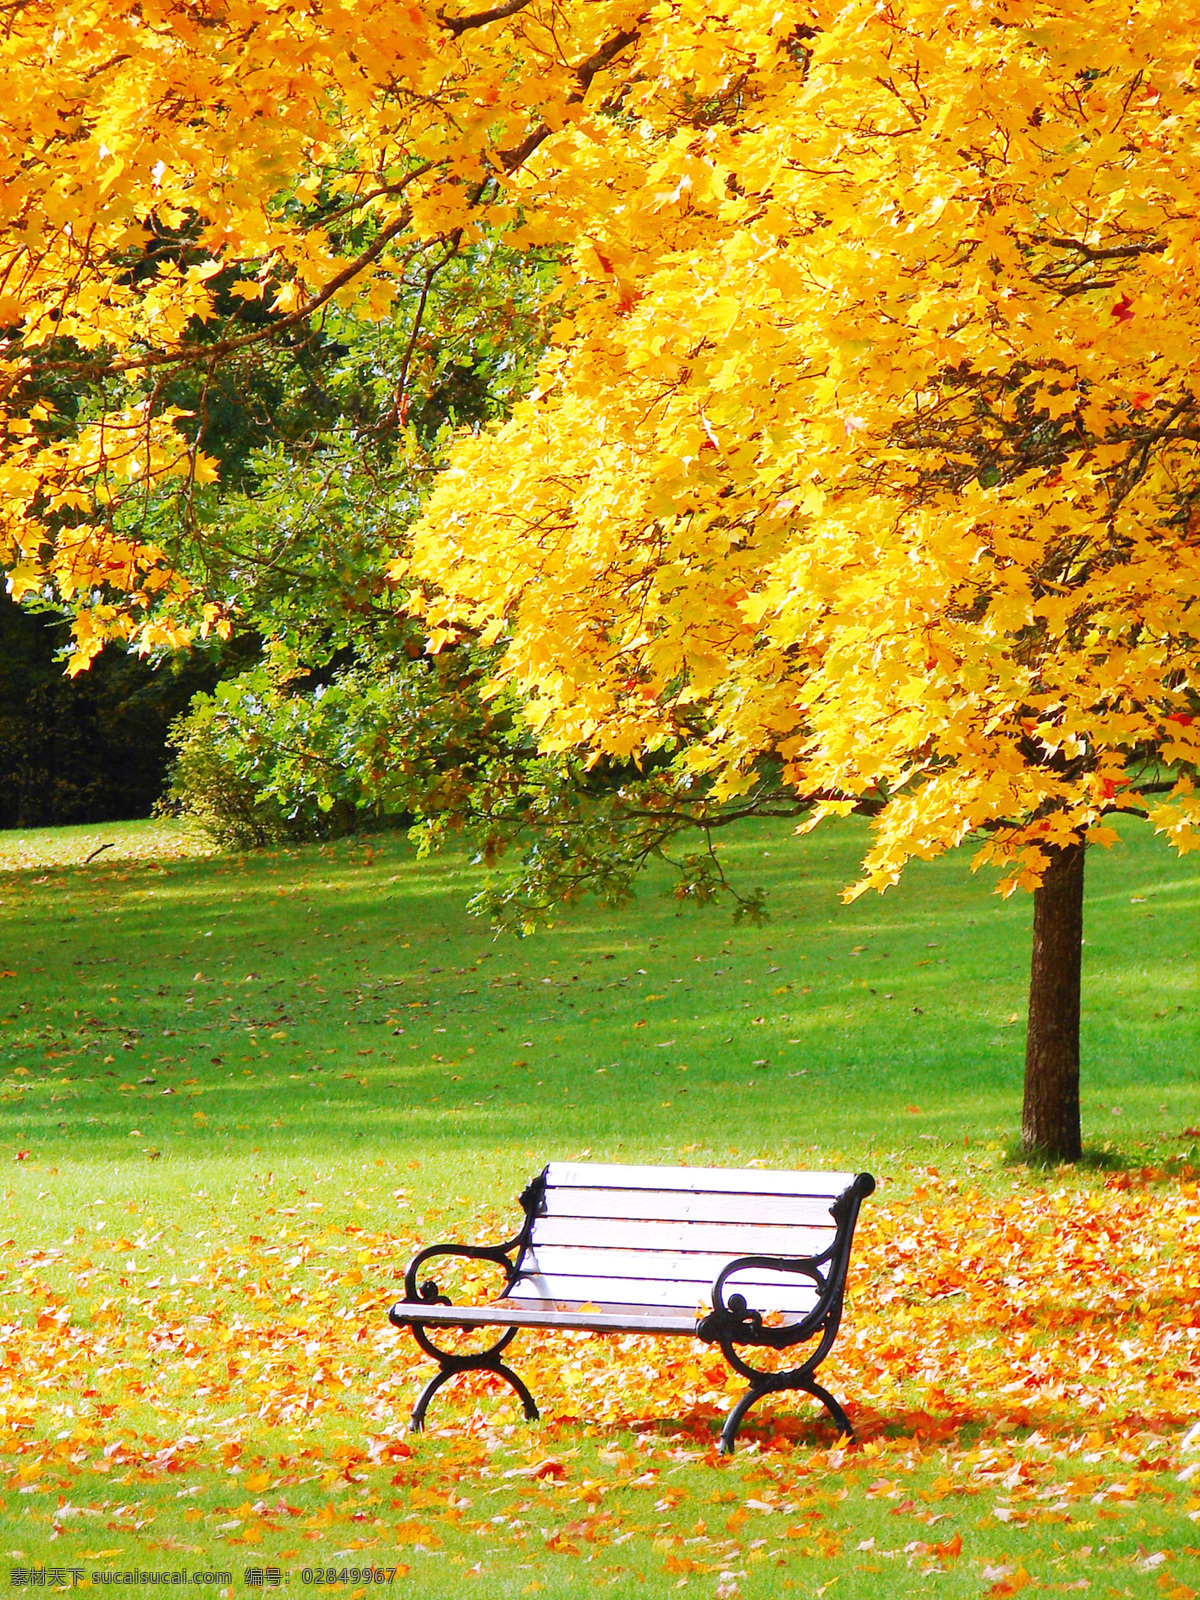 秋天 风景 高清 秋天的风景 高清图片 秋景 枫树 红叶 黄色 枯叶 落叶 枫林 生物世界 树木树叶